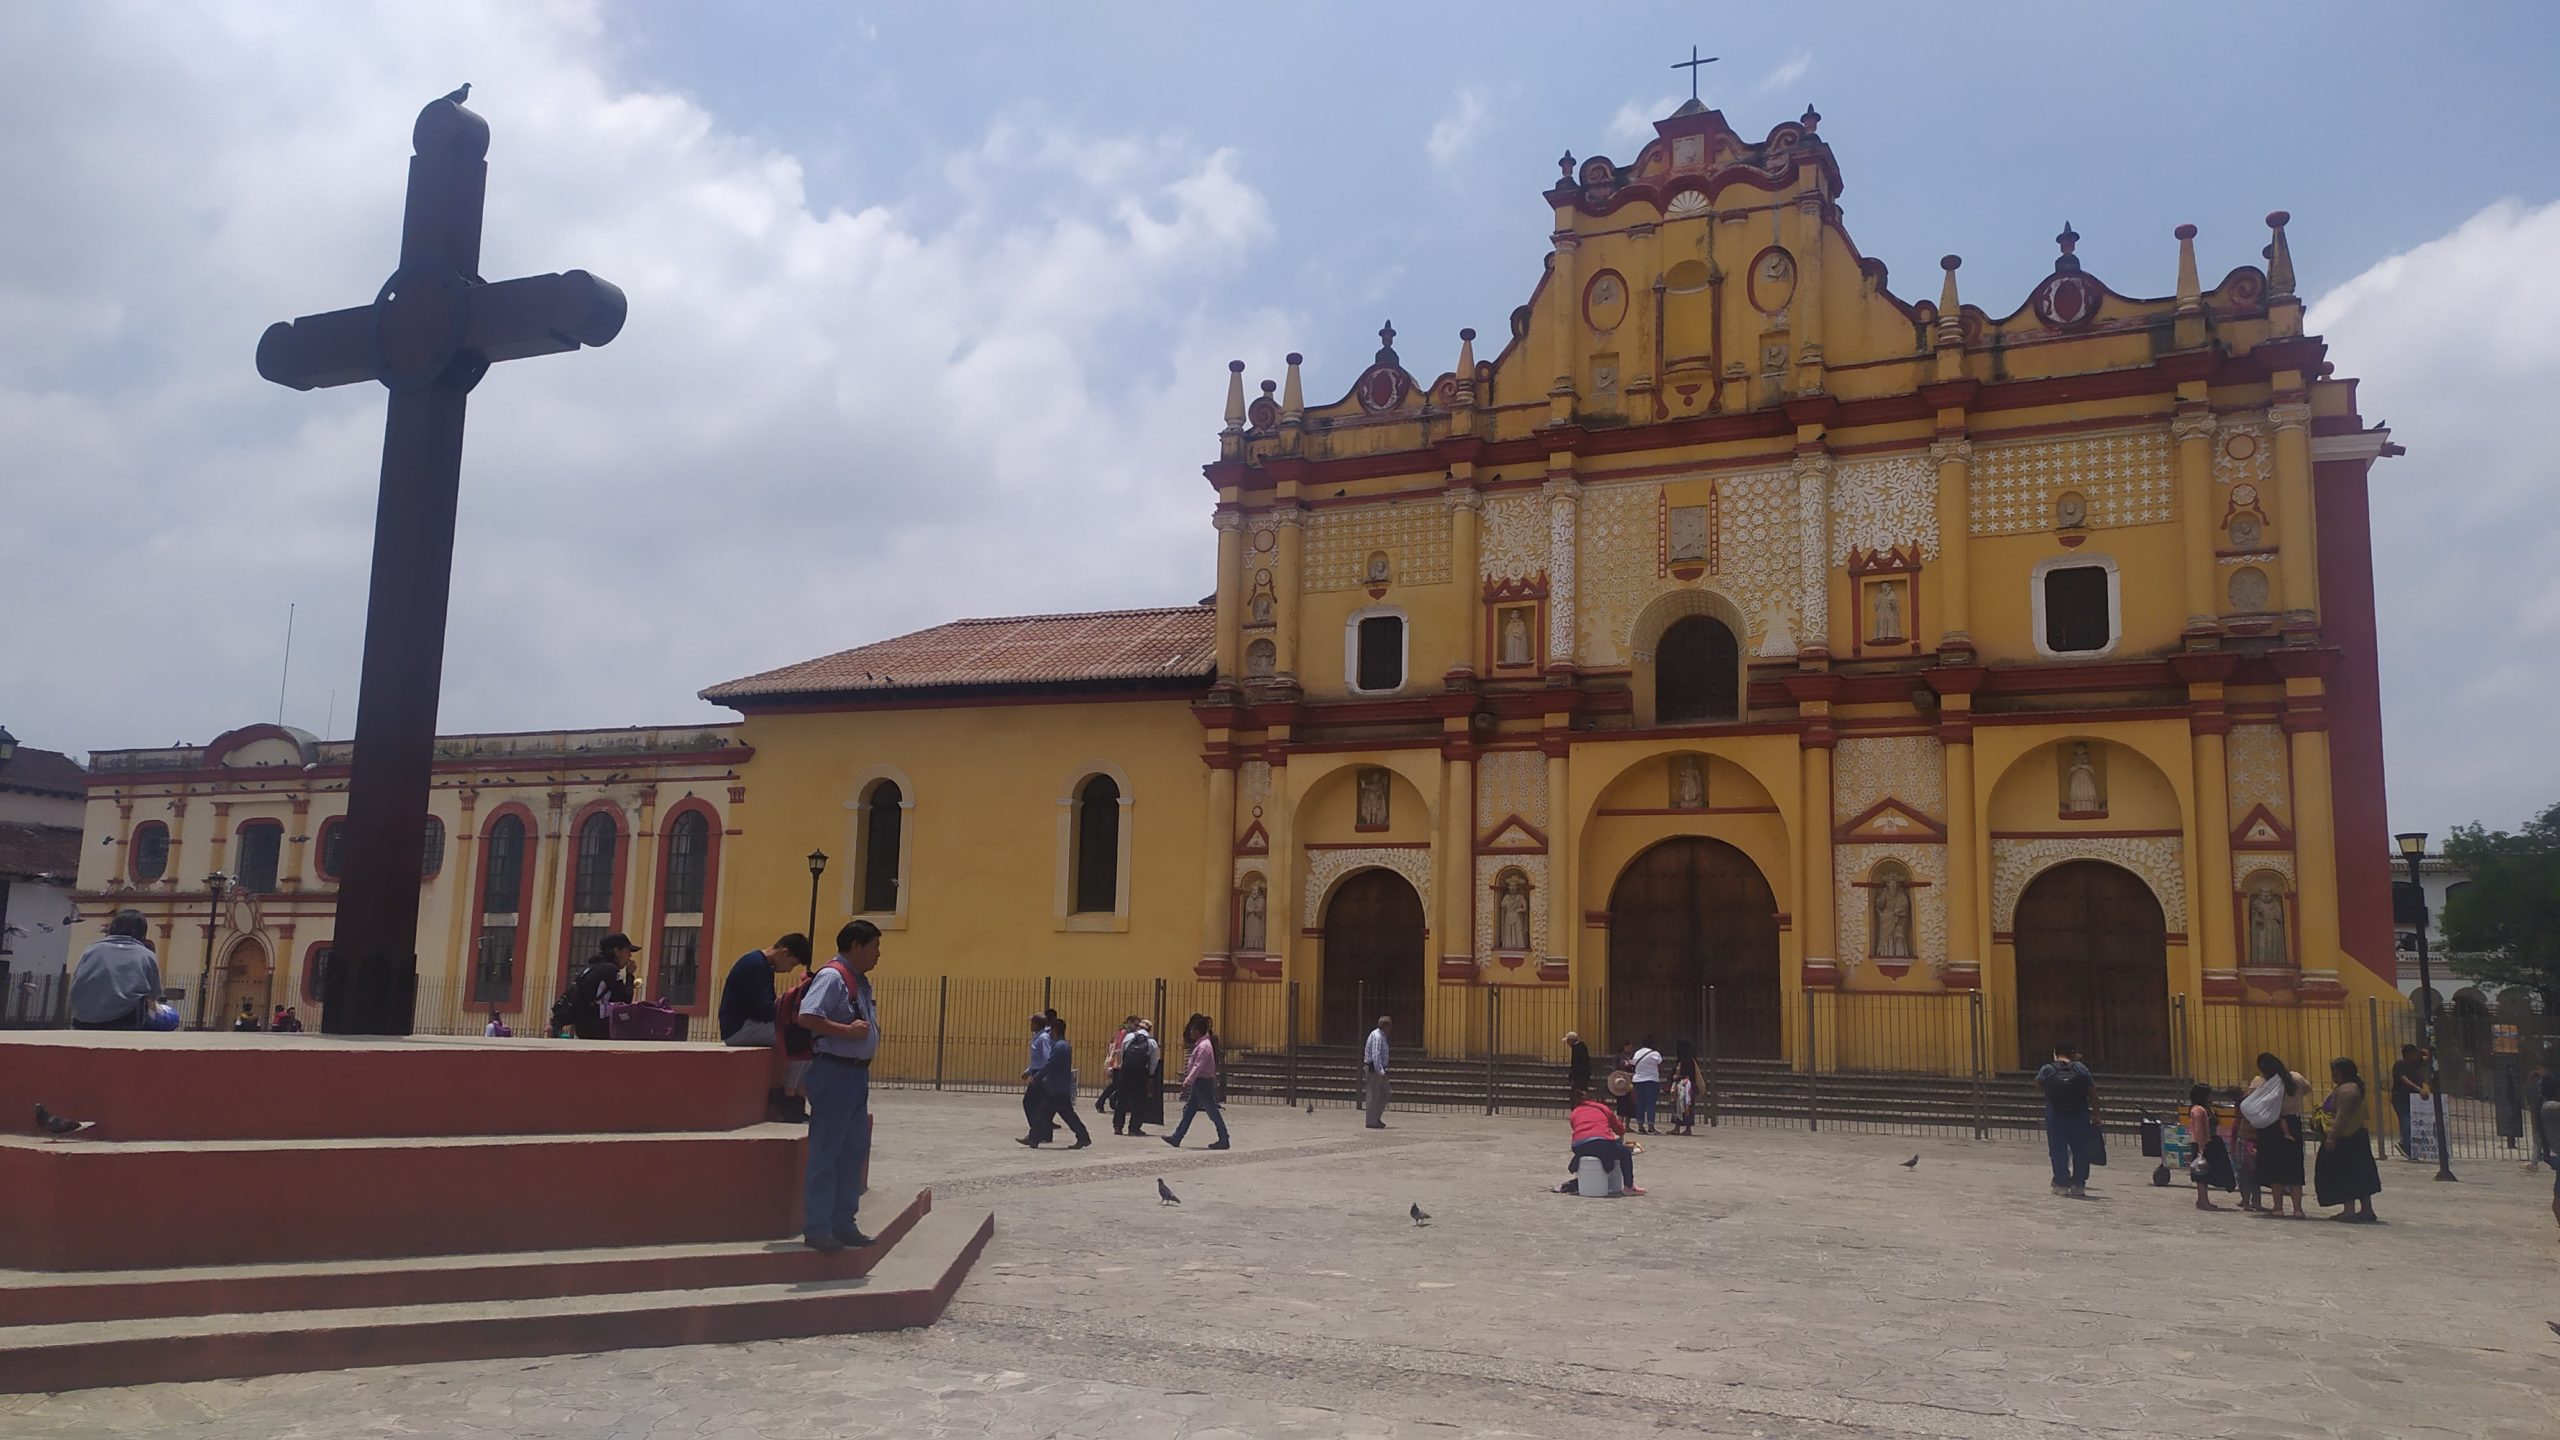 Une belle église couleur ocre trône sur la place centrale de San Cristobal de las Casas